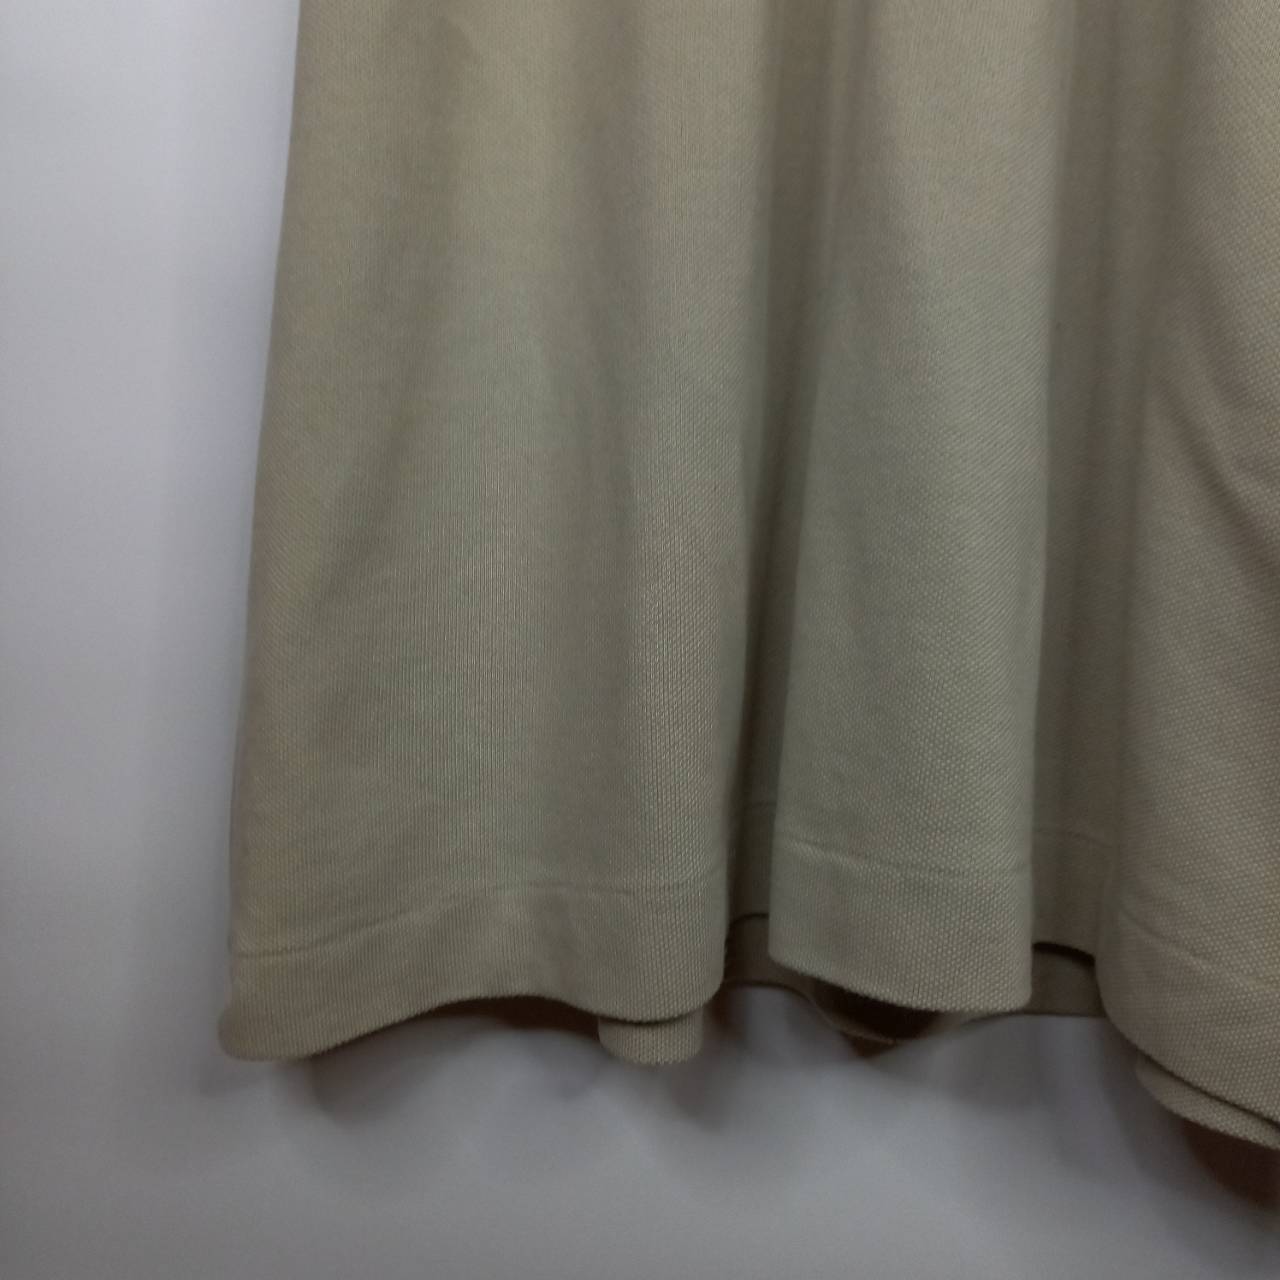 ラコステ　ポロシャツ　半袖　L1212　刺繍ロゴ　シェルボタン　スリット　グレー　L